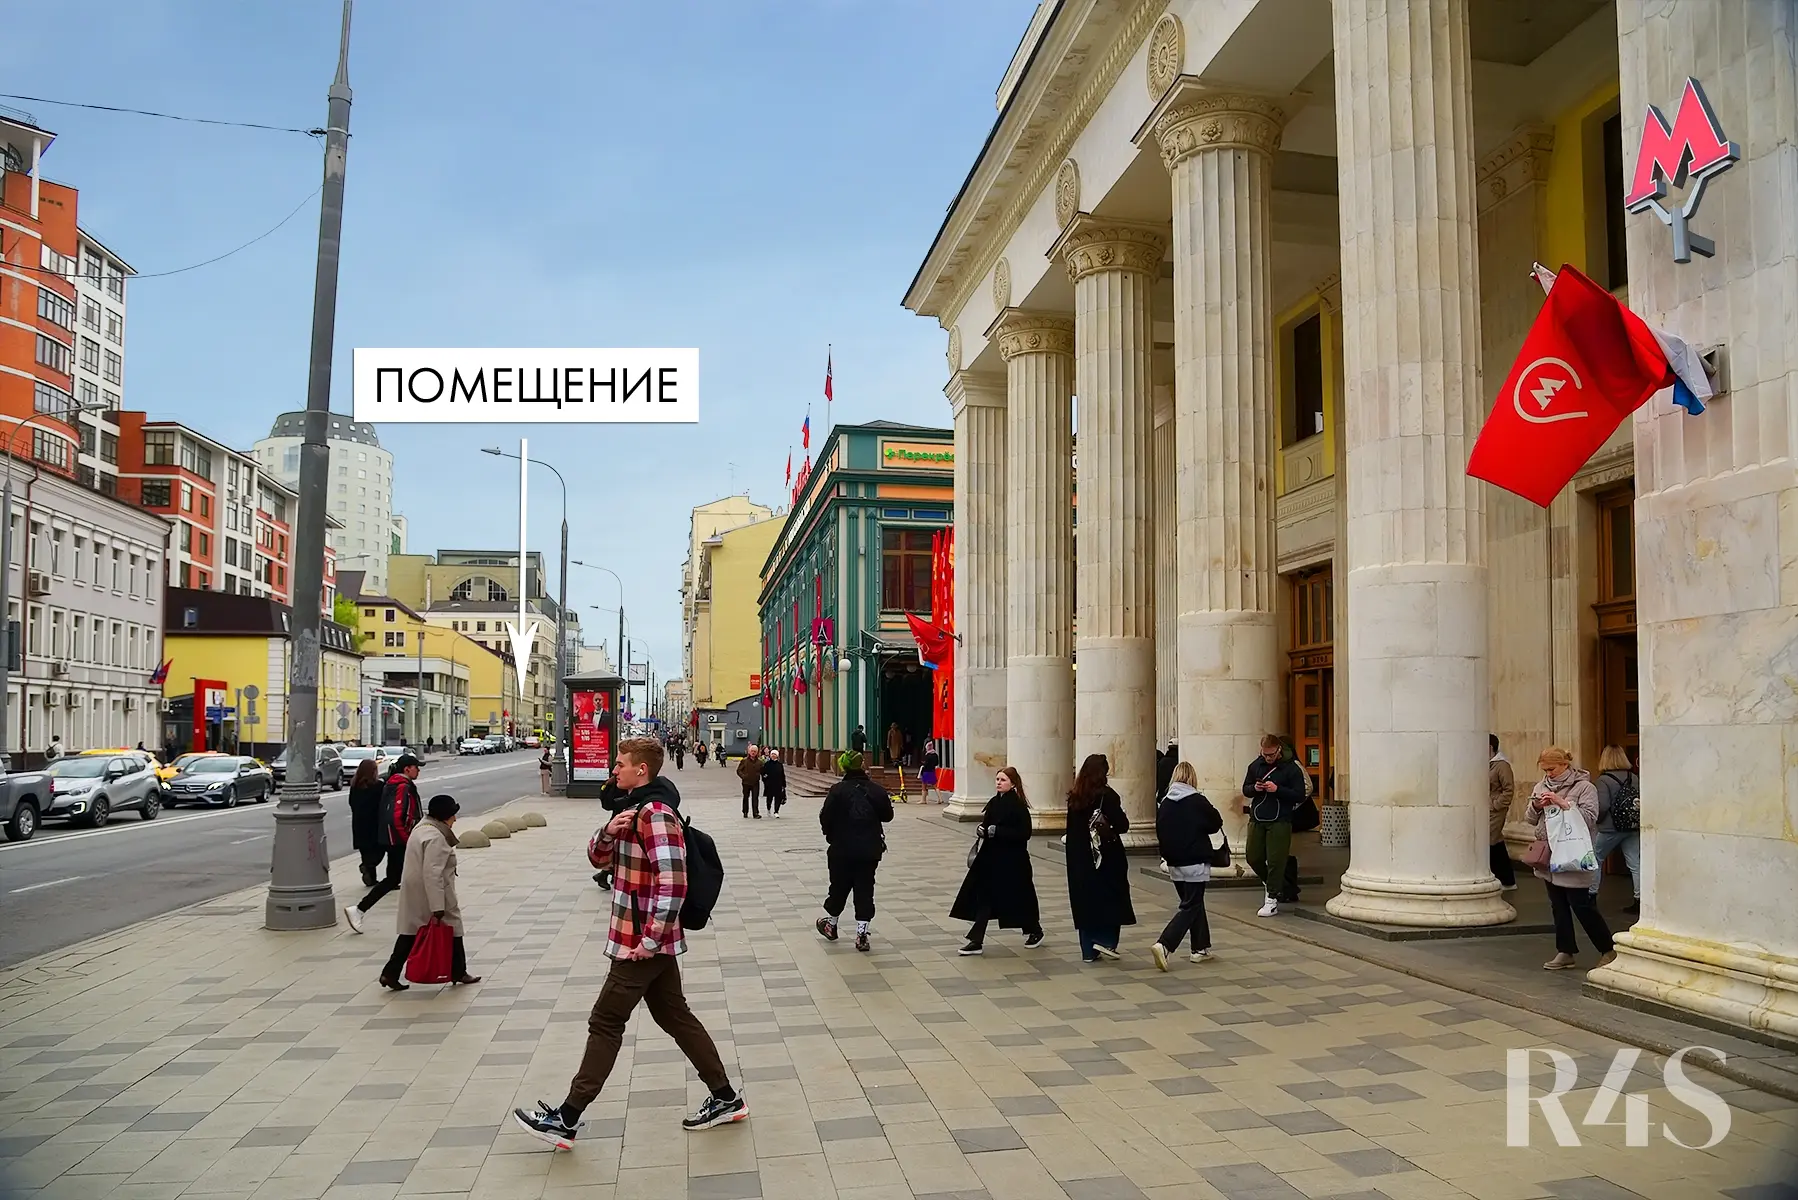 Продажа готового арендного бизнеса площадью 1060 м2 в Москве: Новослободская, 19с1 R4S | Realty4Sale